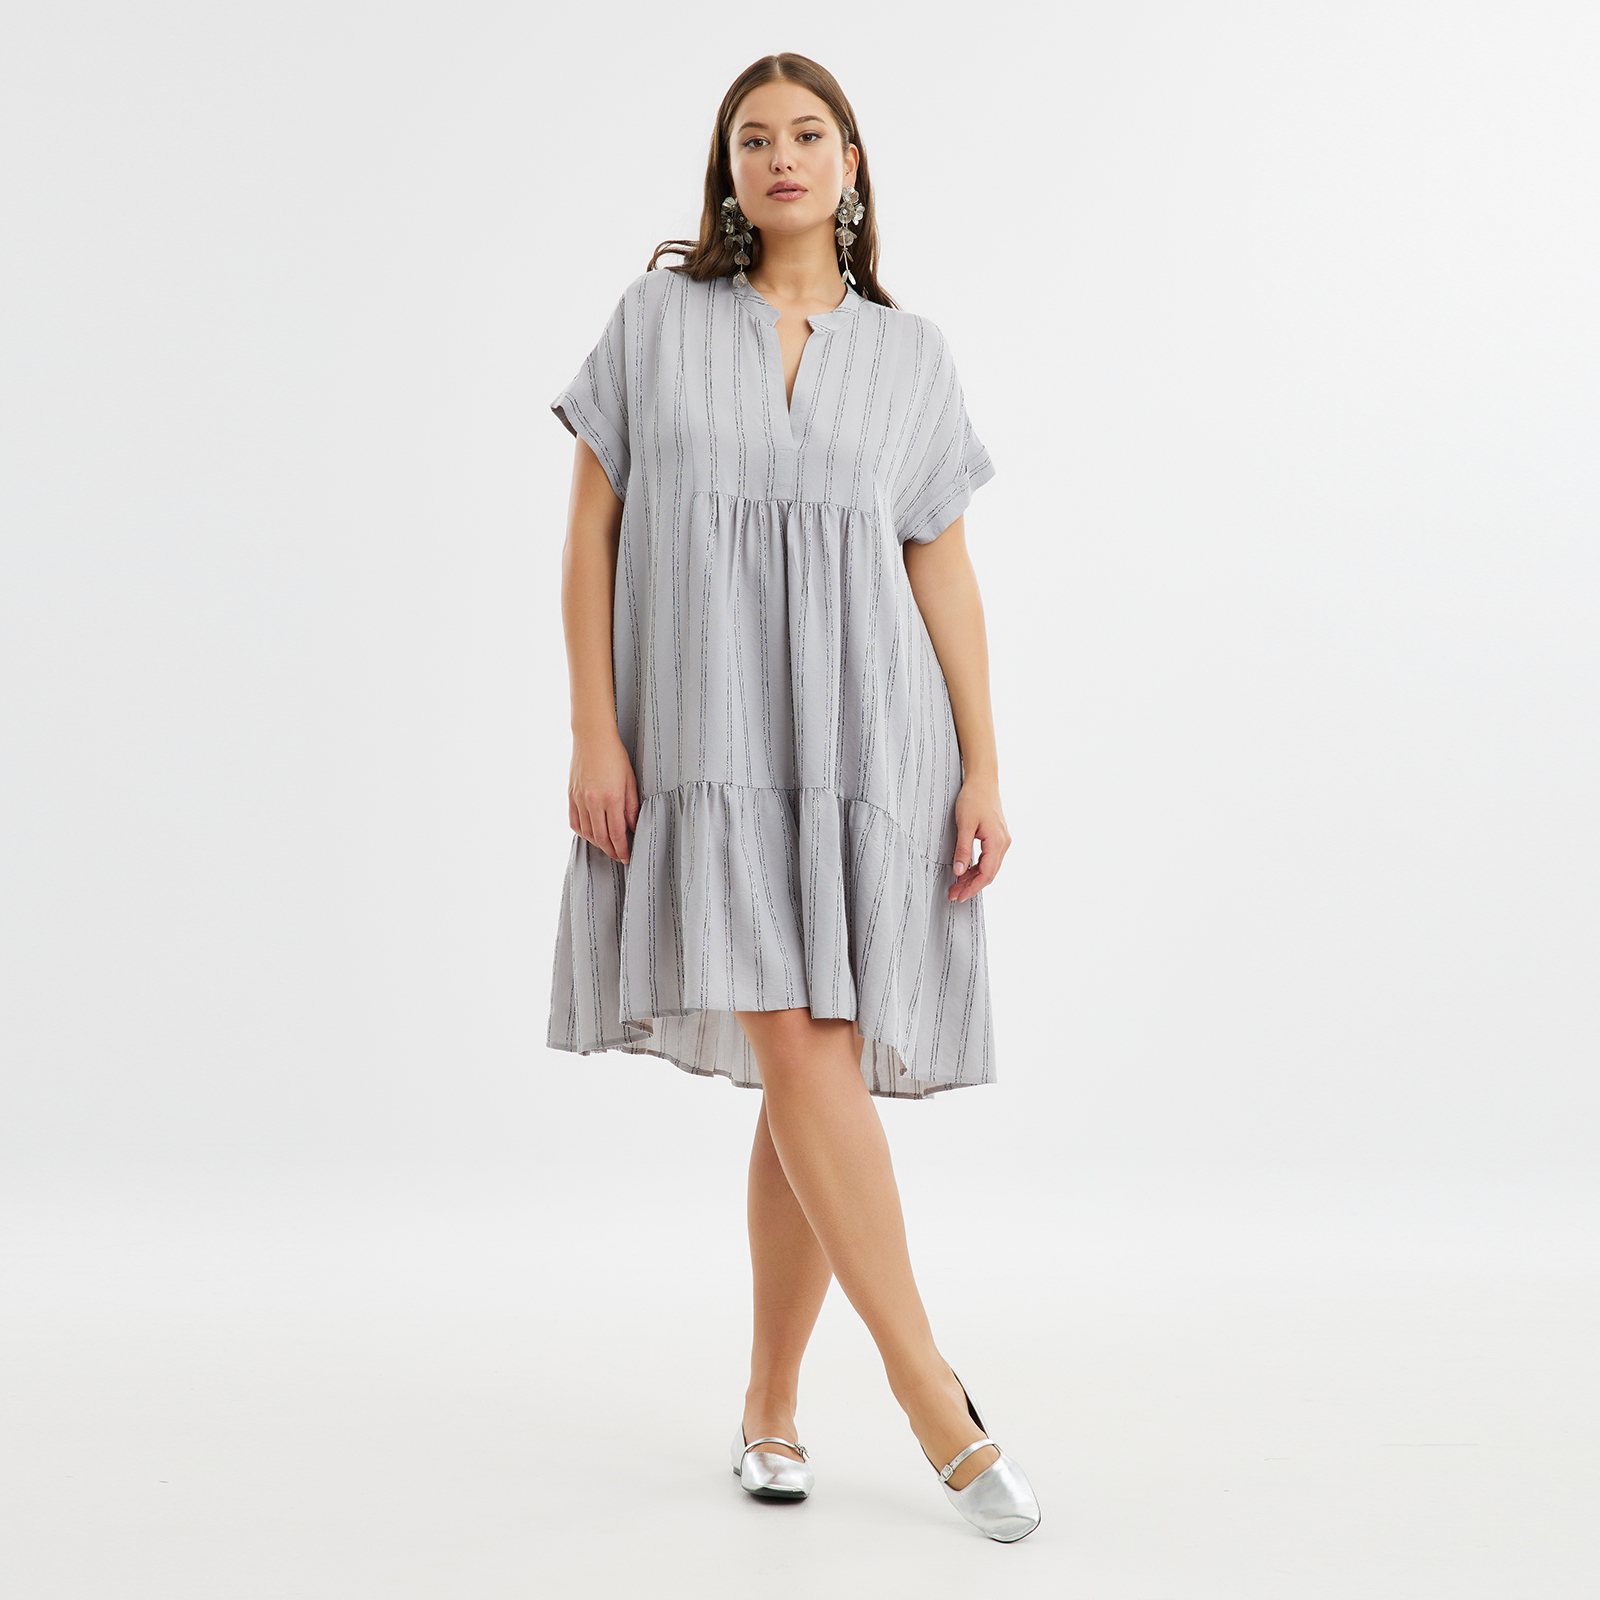 Φόρεμα βισκόζη ριγέ με βολάν 8101.7214-grey